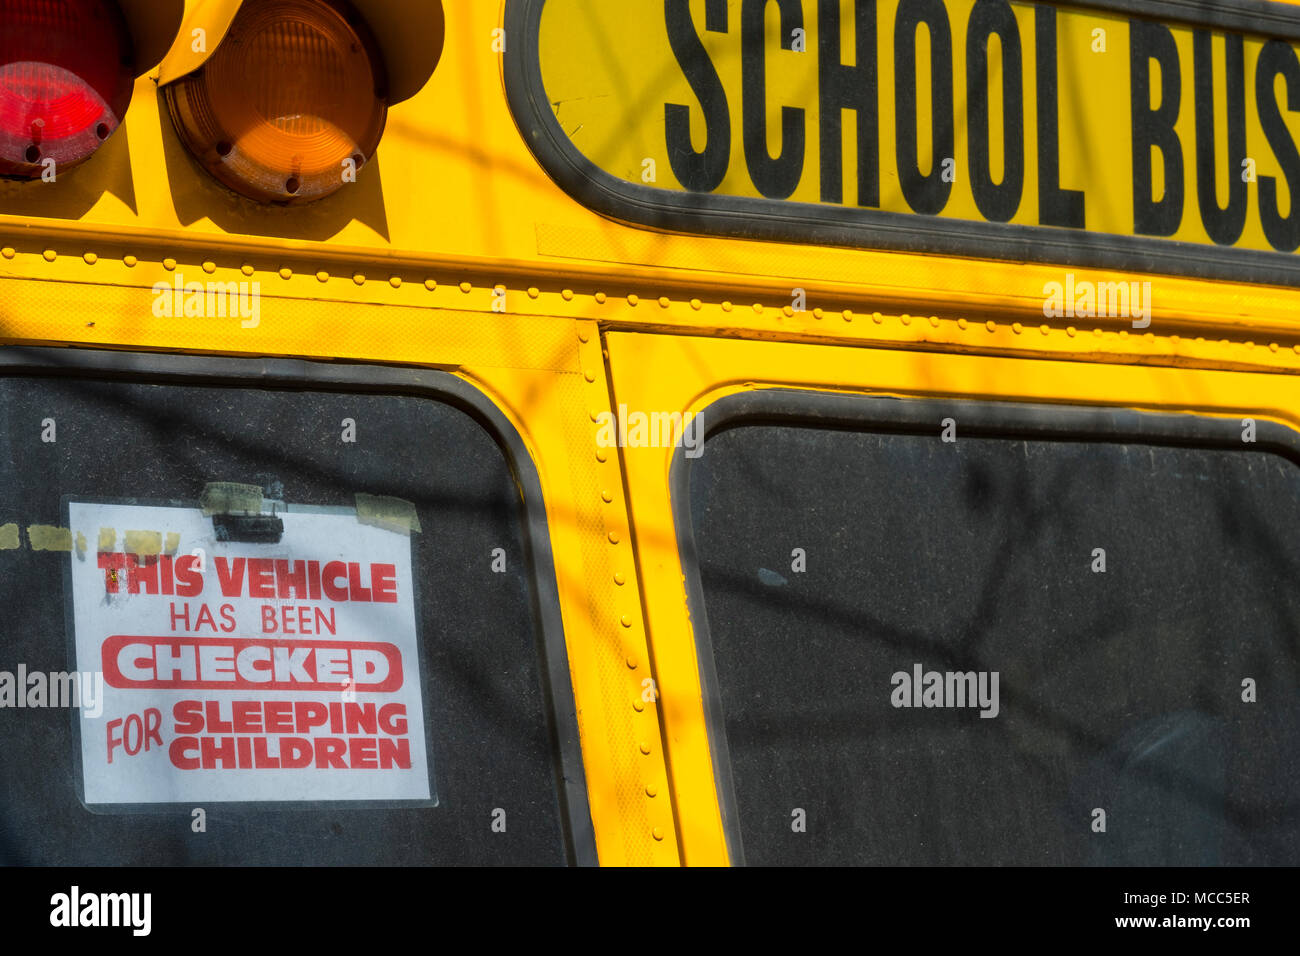 Dieses New York City school-Bus hat für schlafende Kinder geprüft, April 2018 Stockfoto